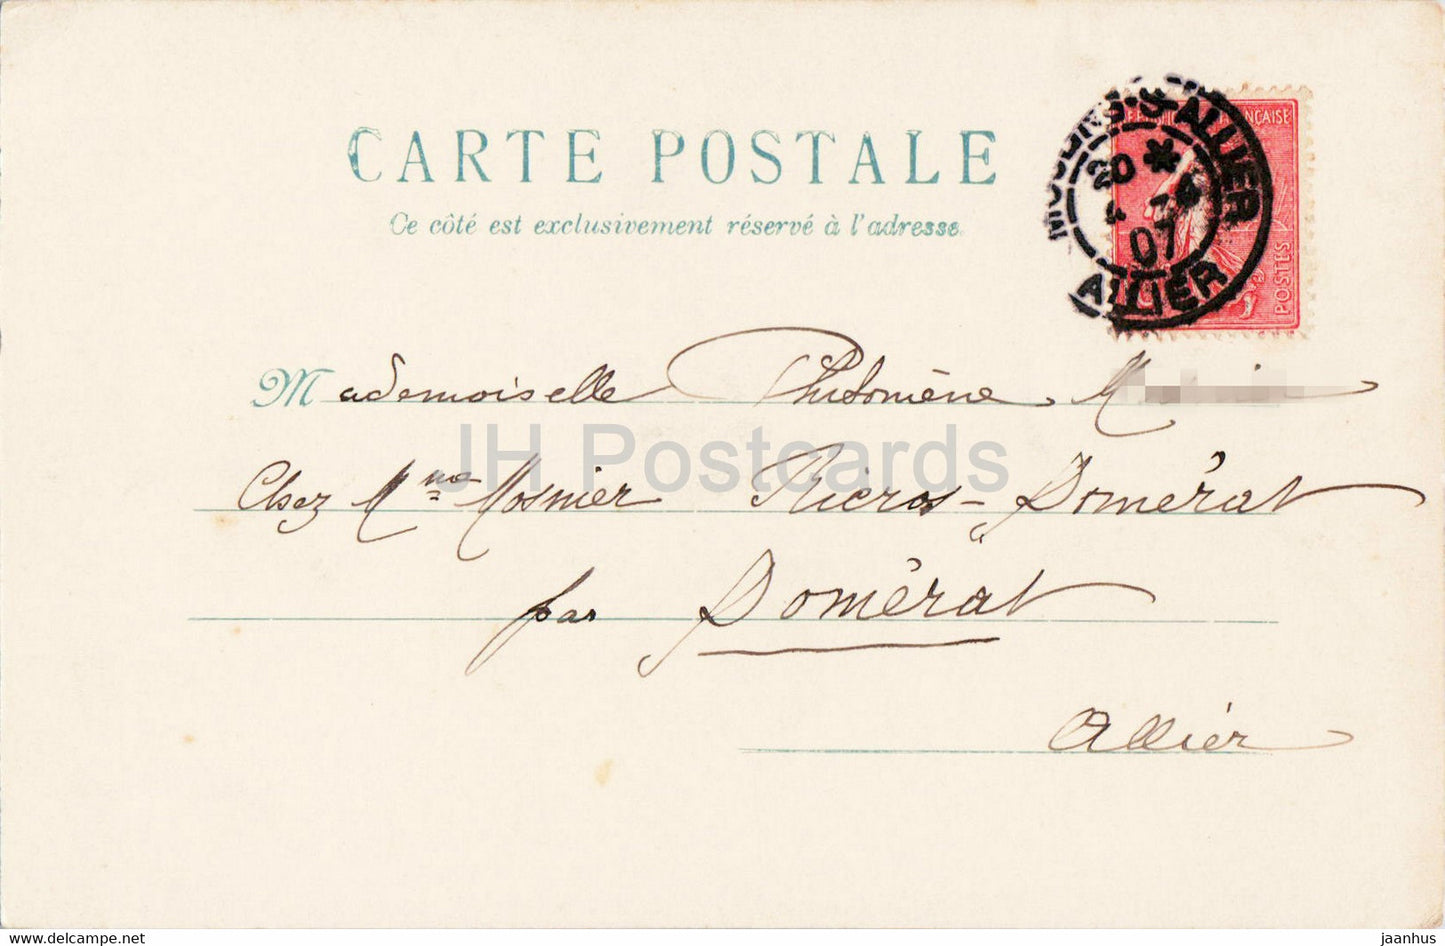 Geburtstagsgrußkarte – blaue Blumen – Illustration – alte Postkarte – 1907 – Frankreich – gebraucht